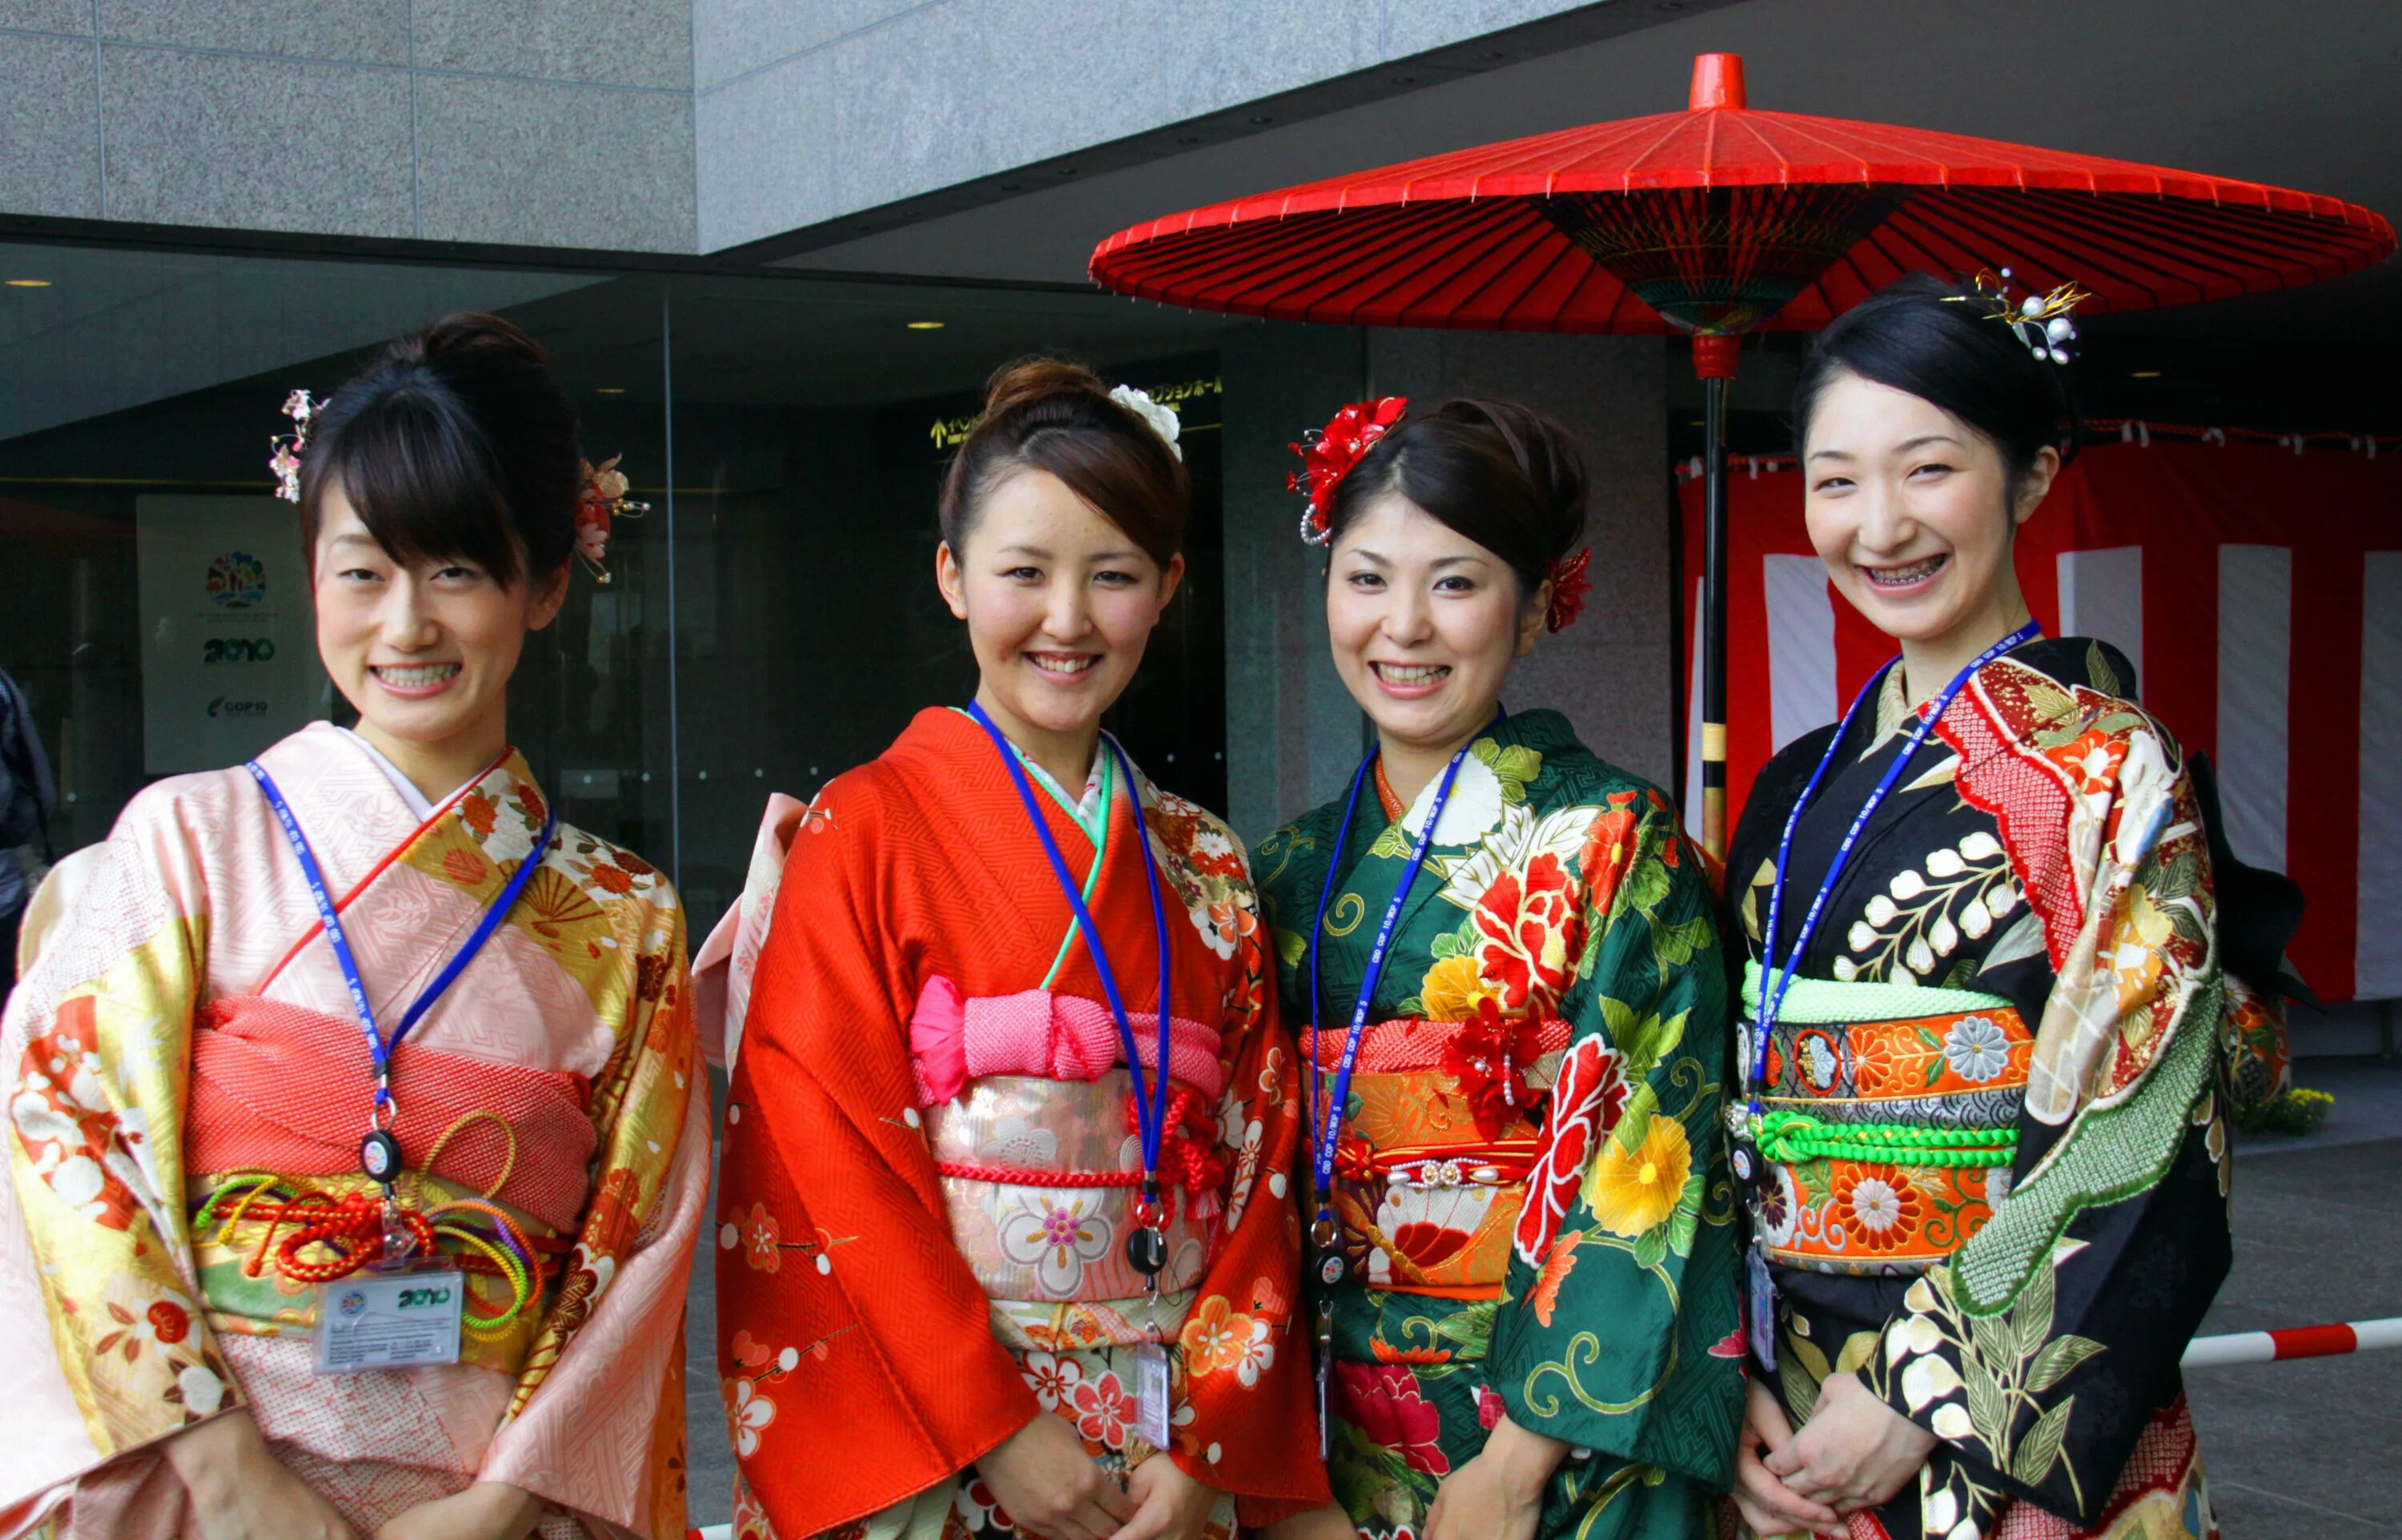 Japanese women is. Япония люди в кимоно. Национальный наряд Японии. Национальная одежда Японии кимоно. Традиционное японское кимоно.